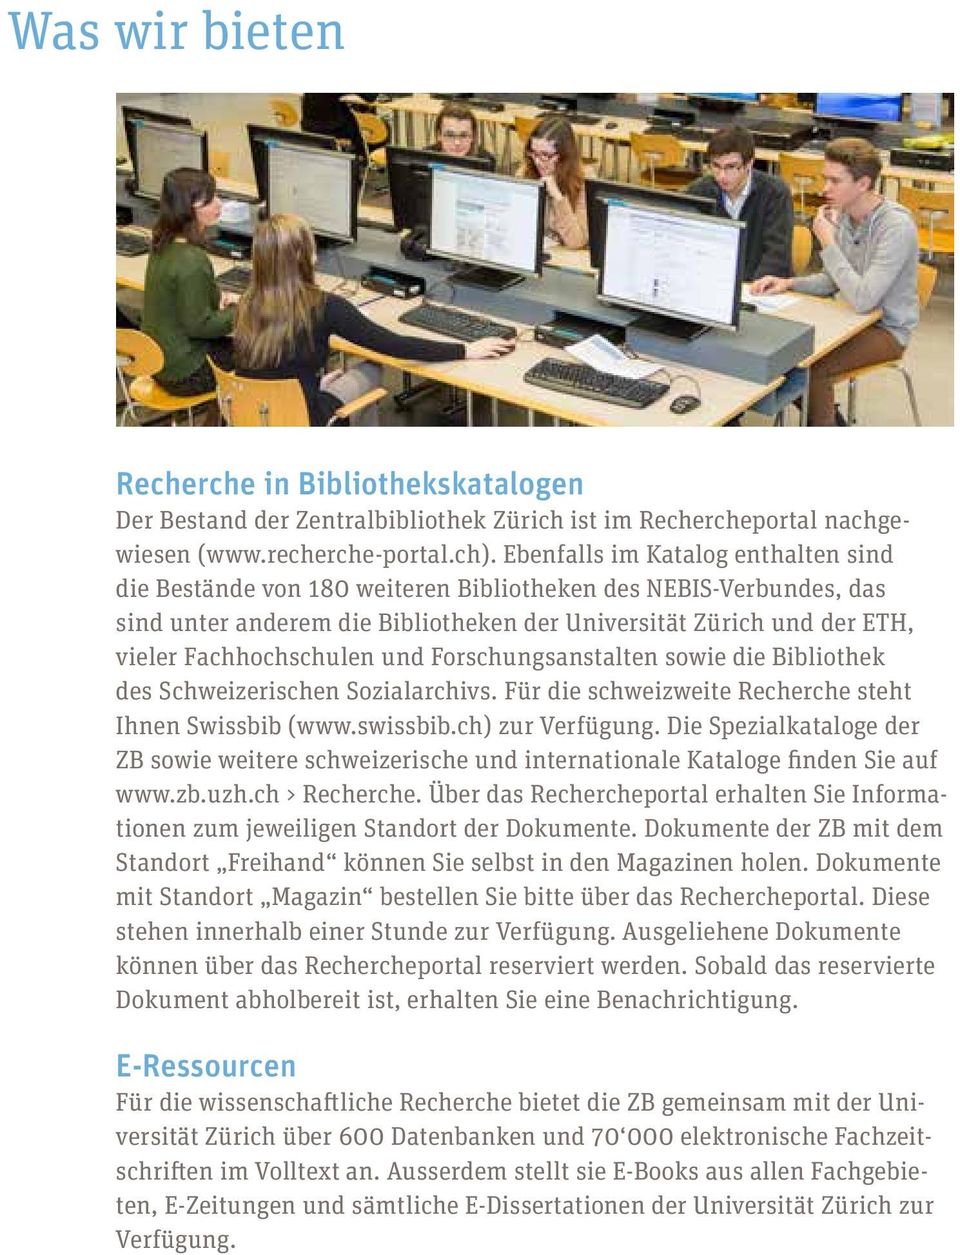 und Forschungsanstalten sowie die Bibliothek des Schweizerischen Sozialarchivs. Für die schweizweite Recherche steht Ihnen Swissbib (www.swissbib.ch) zur Verfügung.